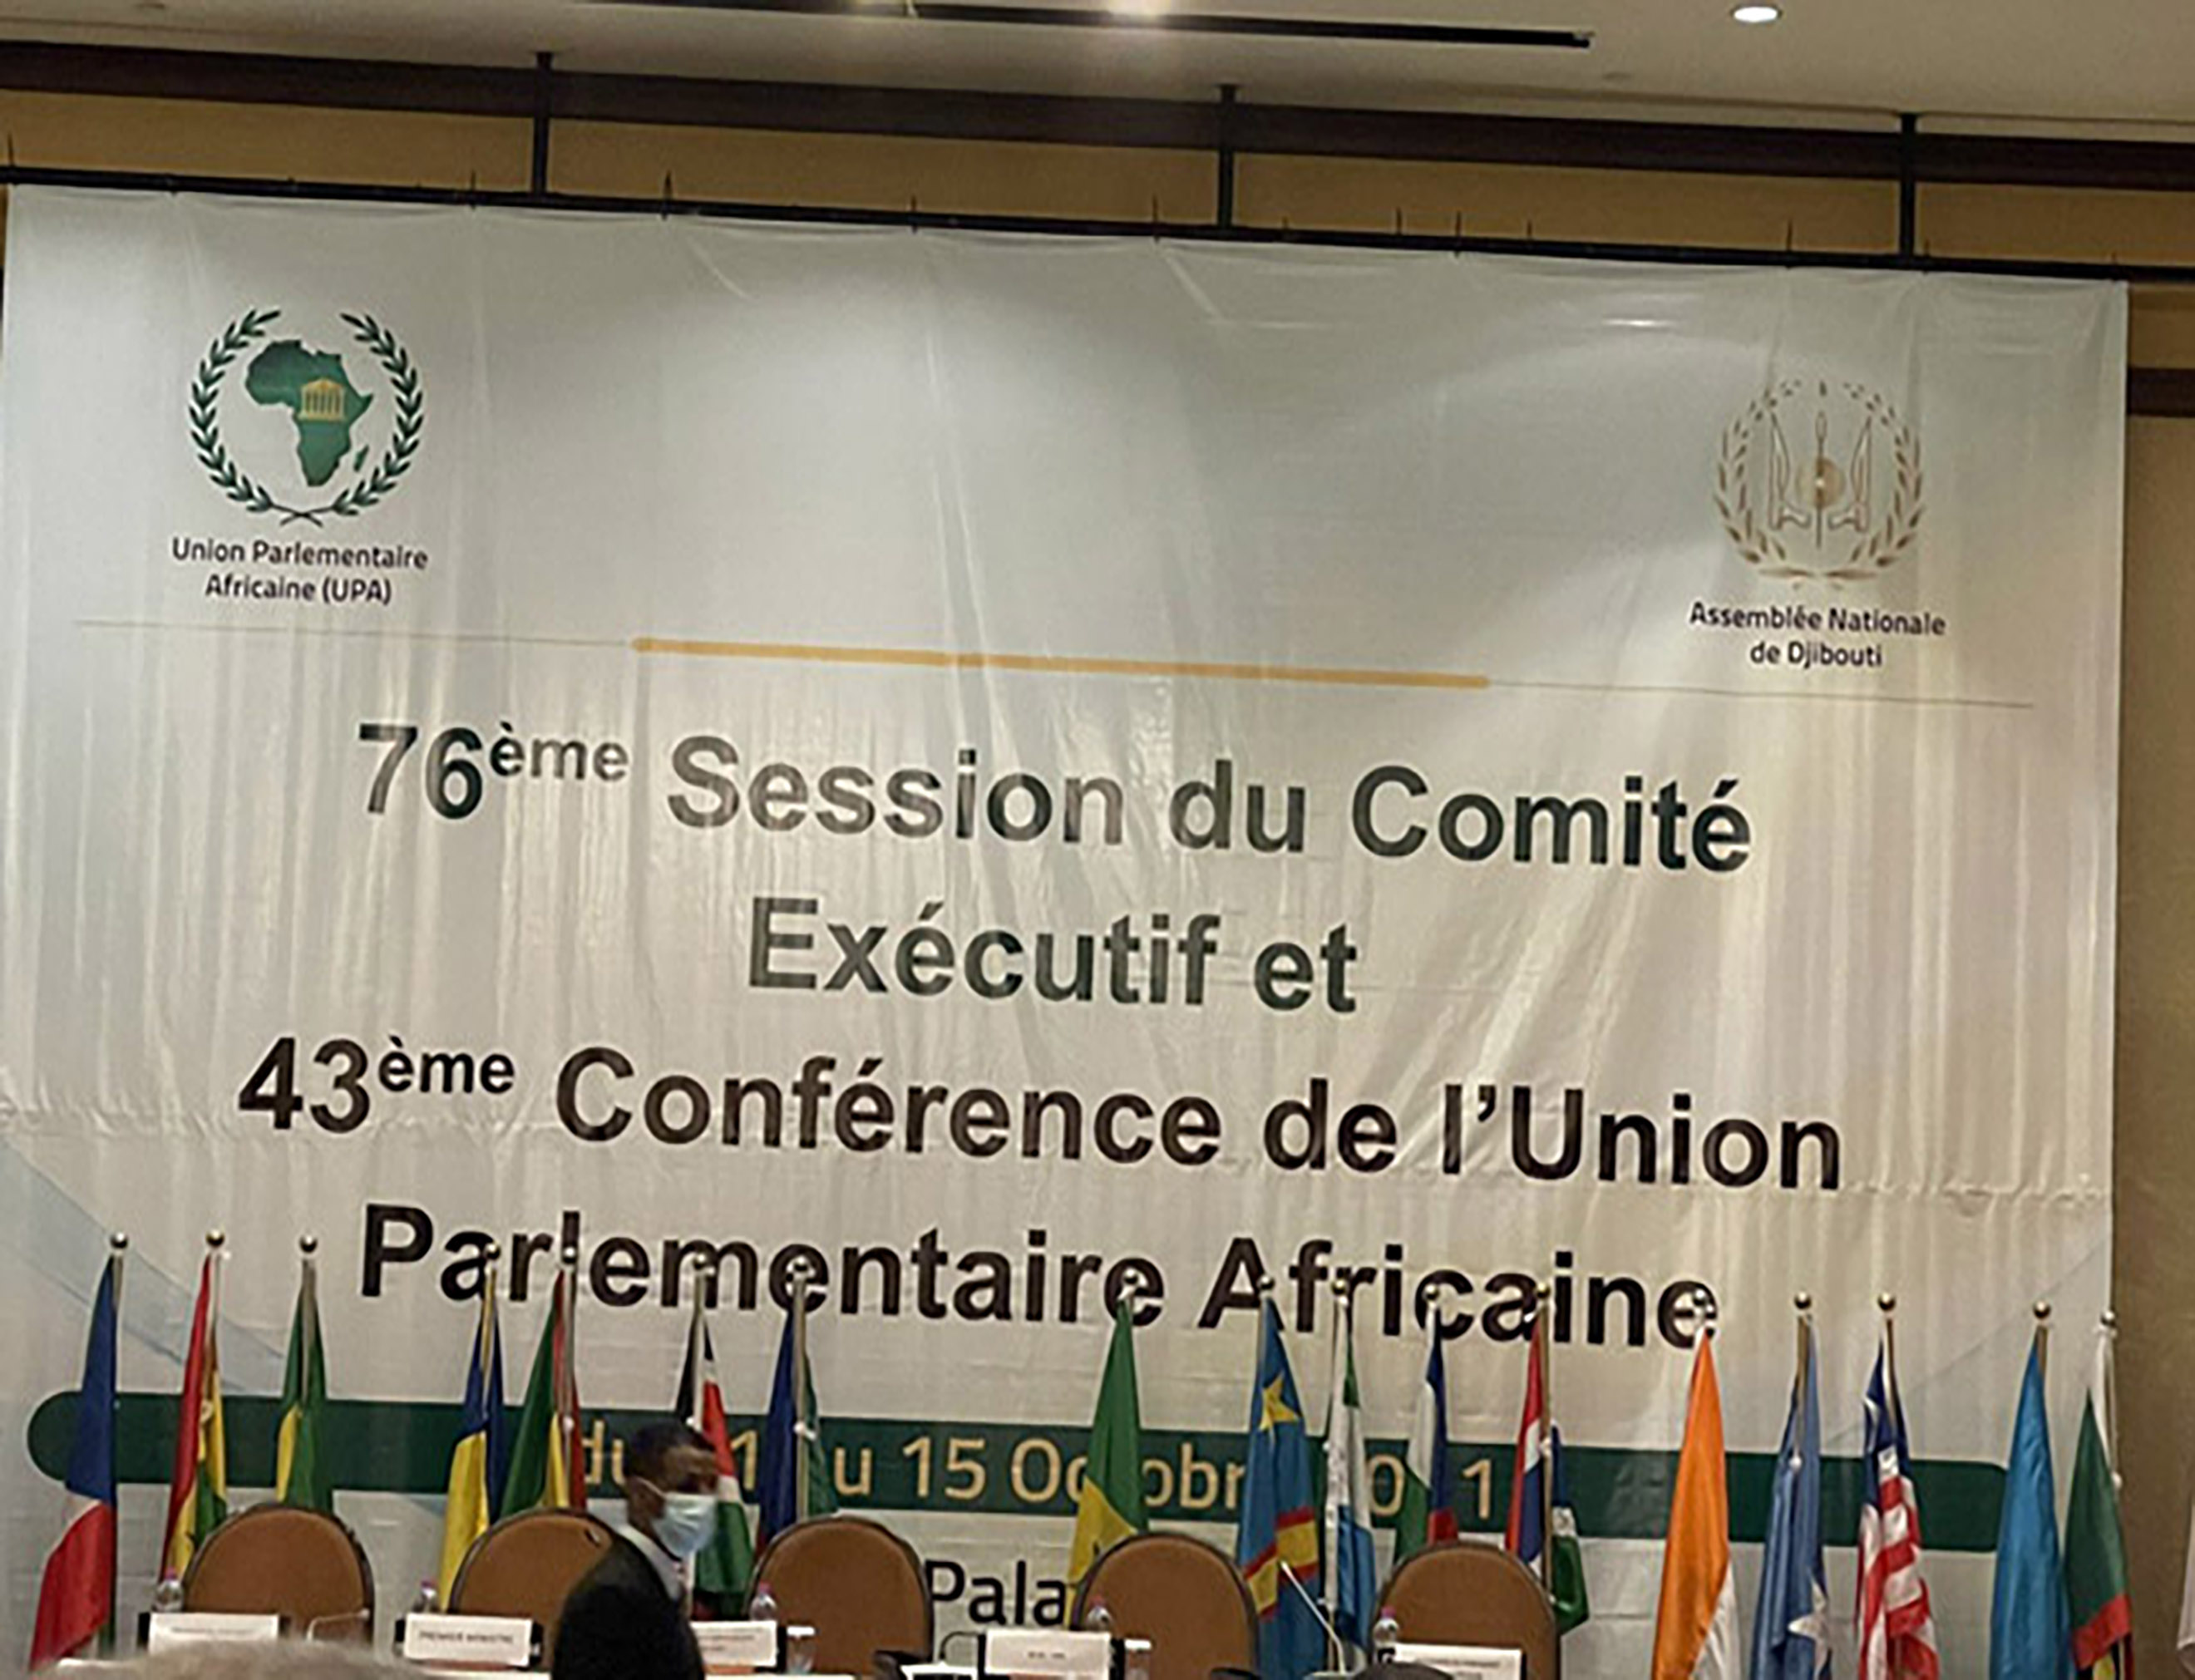 اتحاد مجالس الدول الأعضاء في منظمة التعاون الاسلامي يشارك في المؤتمر الـ(43) للاتحاد البرلماني الافريقي 